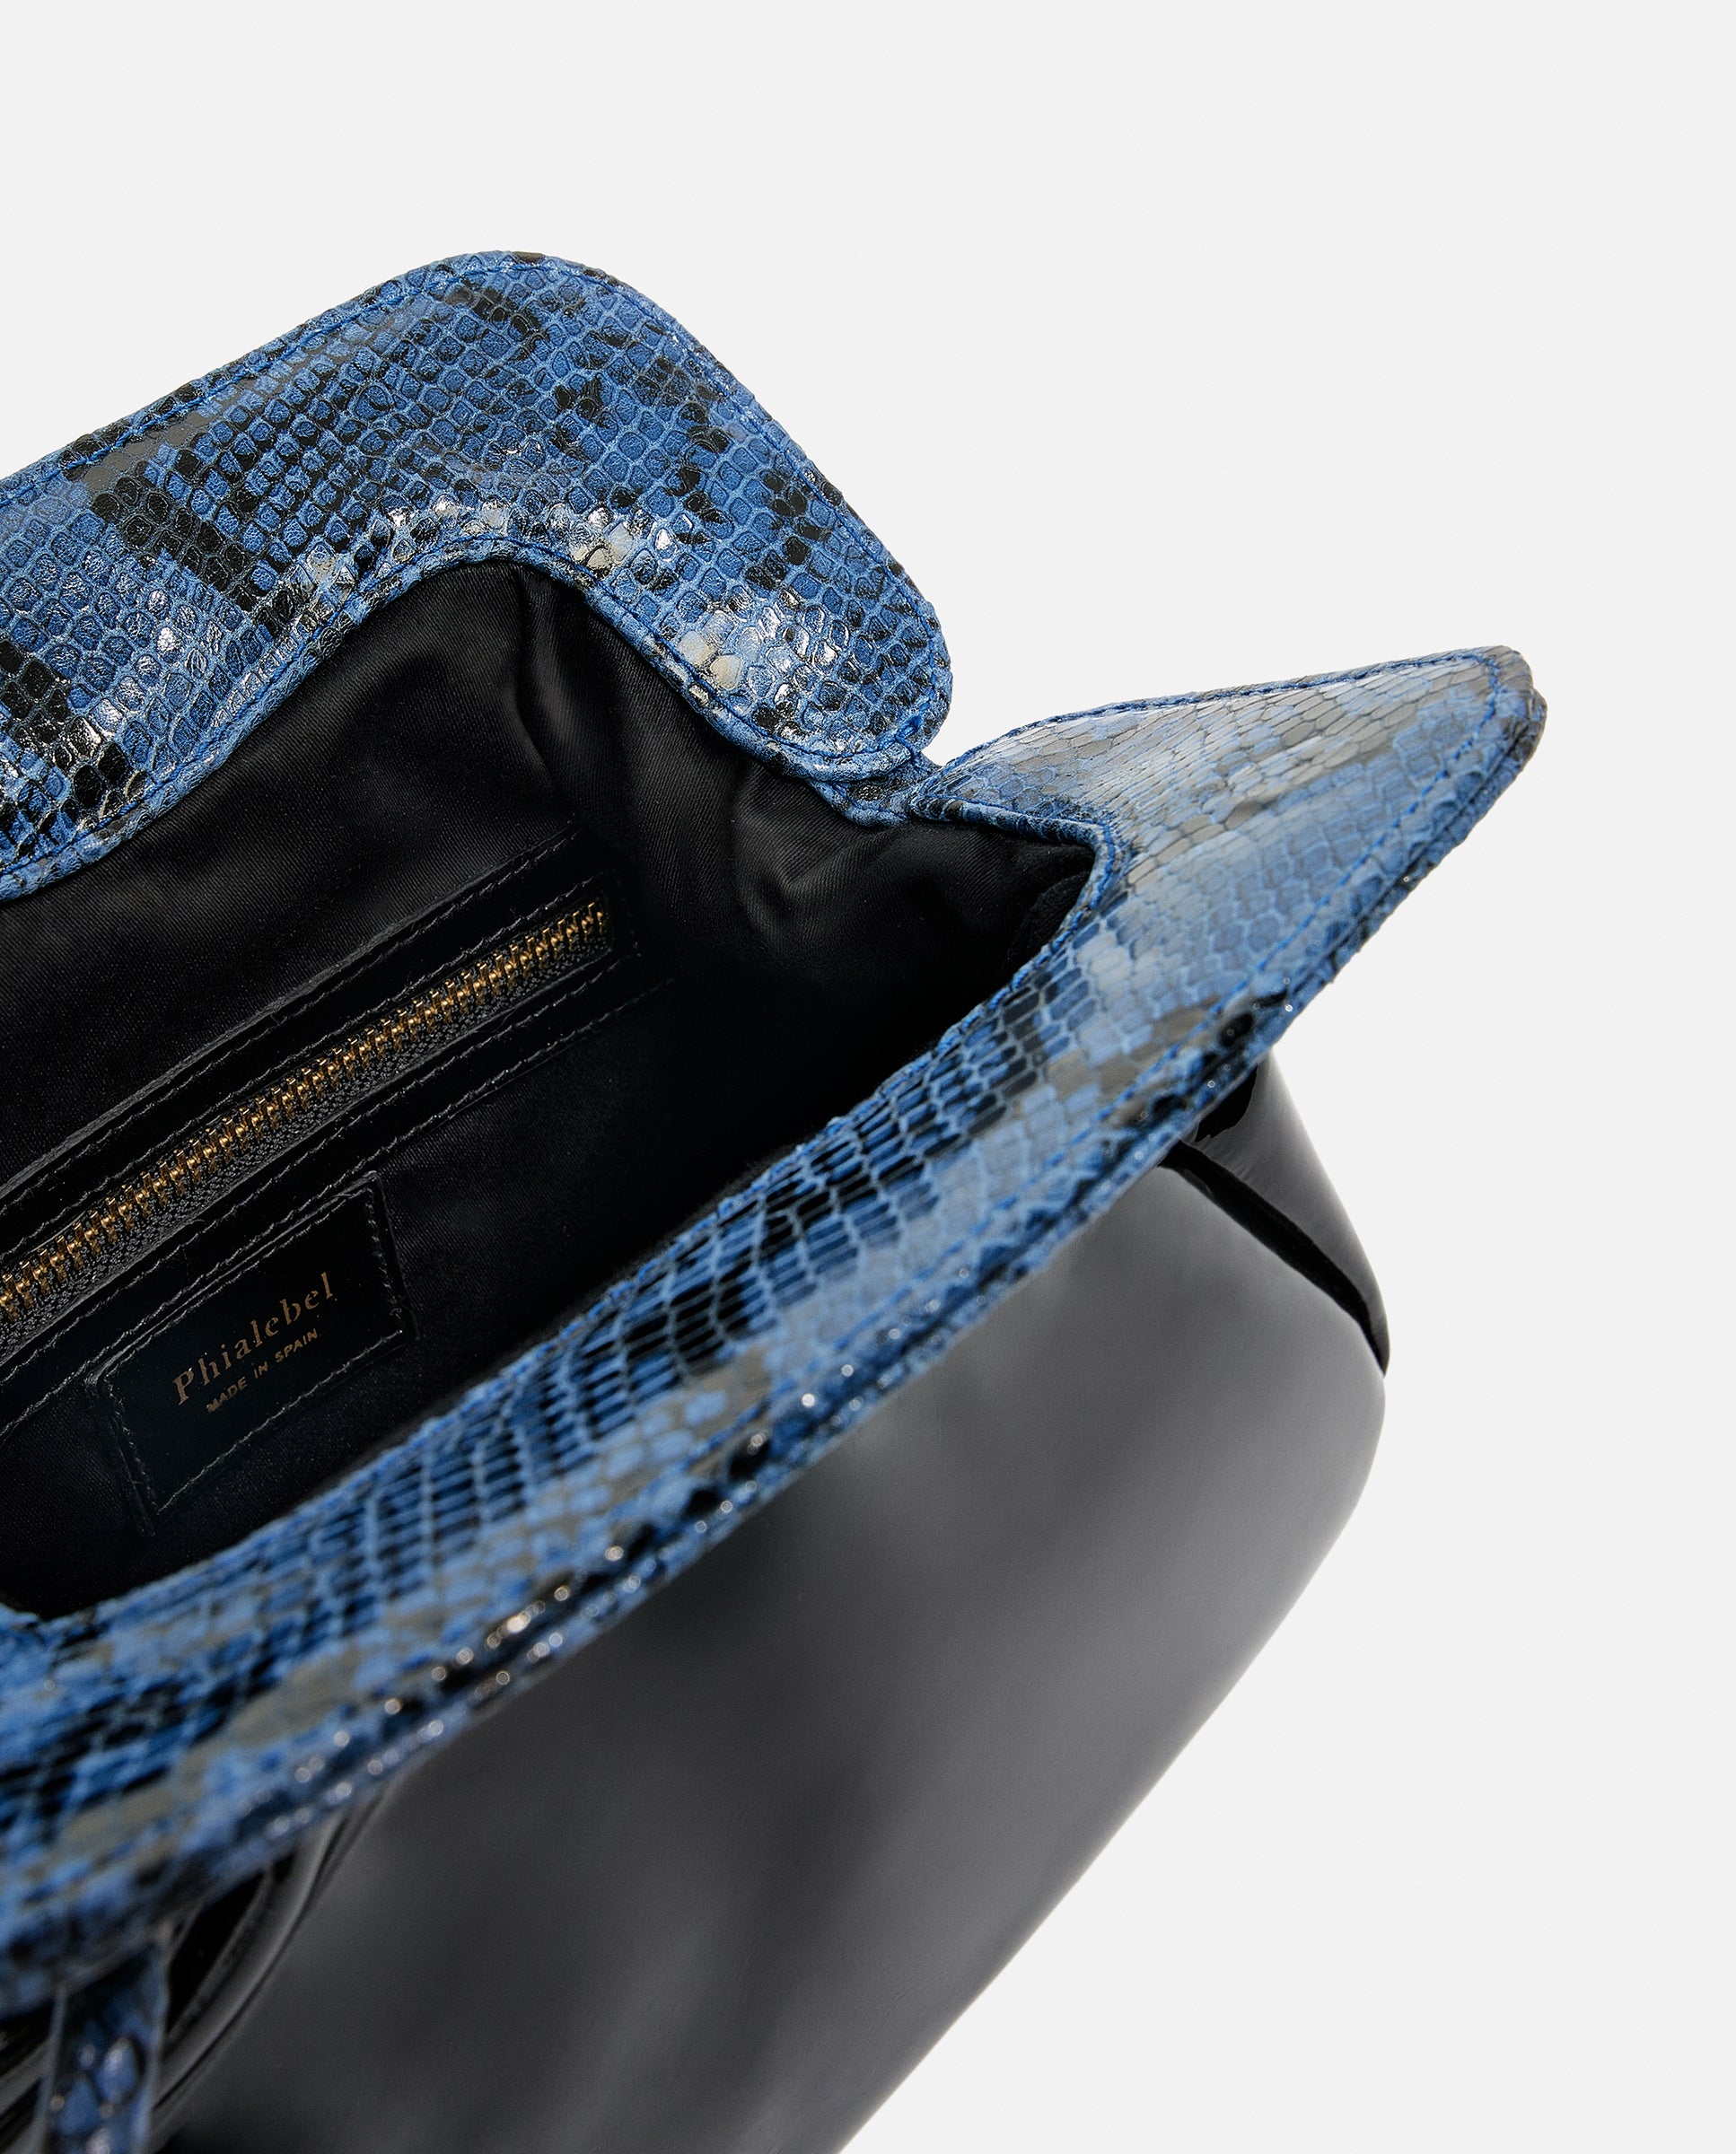 Detalle de bolso negro y azul hecho artesanalmente en charol